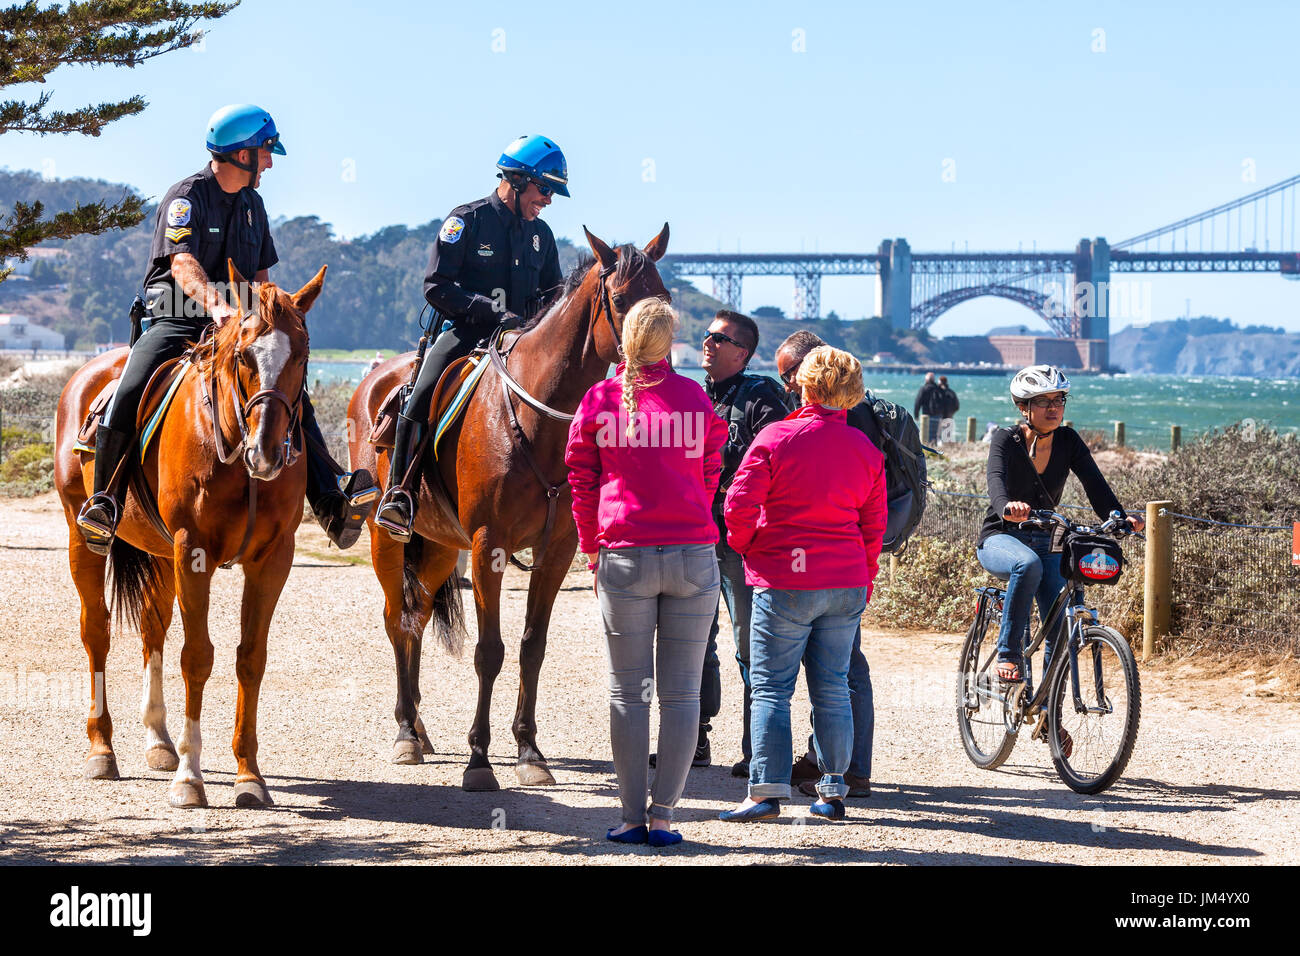 SAN FRANCISCO-SEPT 25, 2013: US Park poliziotti accolgono i visitatori a Crissy Field waterfront. Golden Gate Bridge in background. Foto Stock